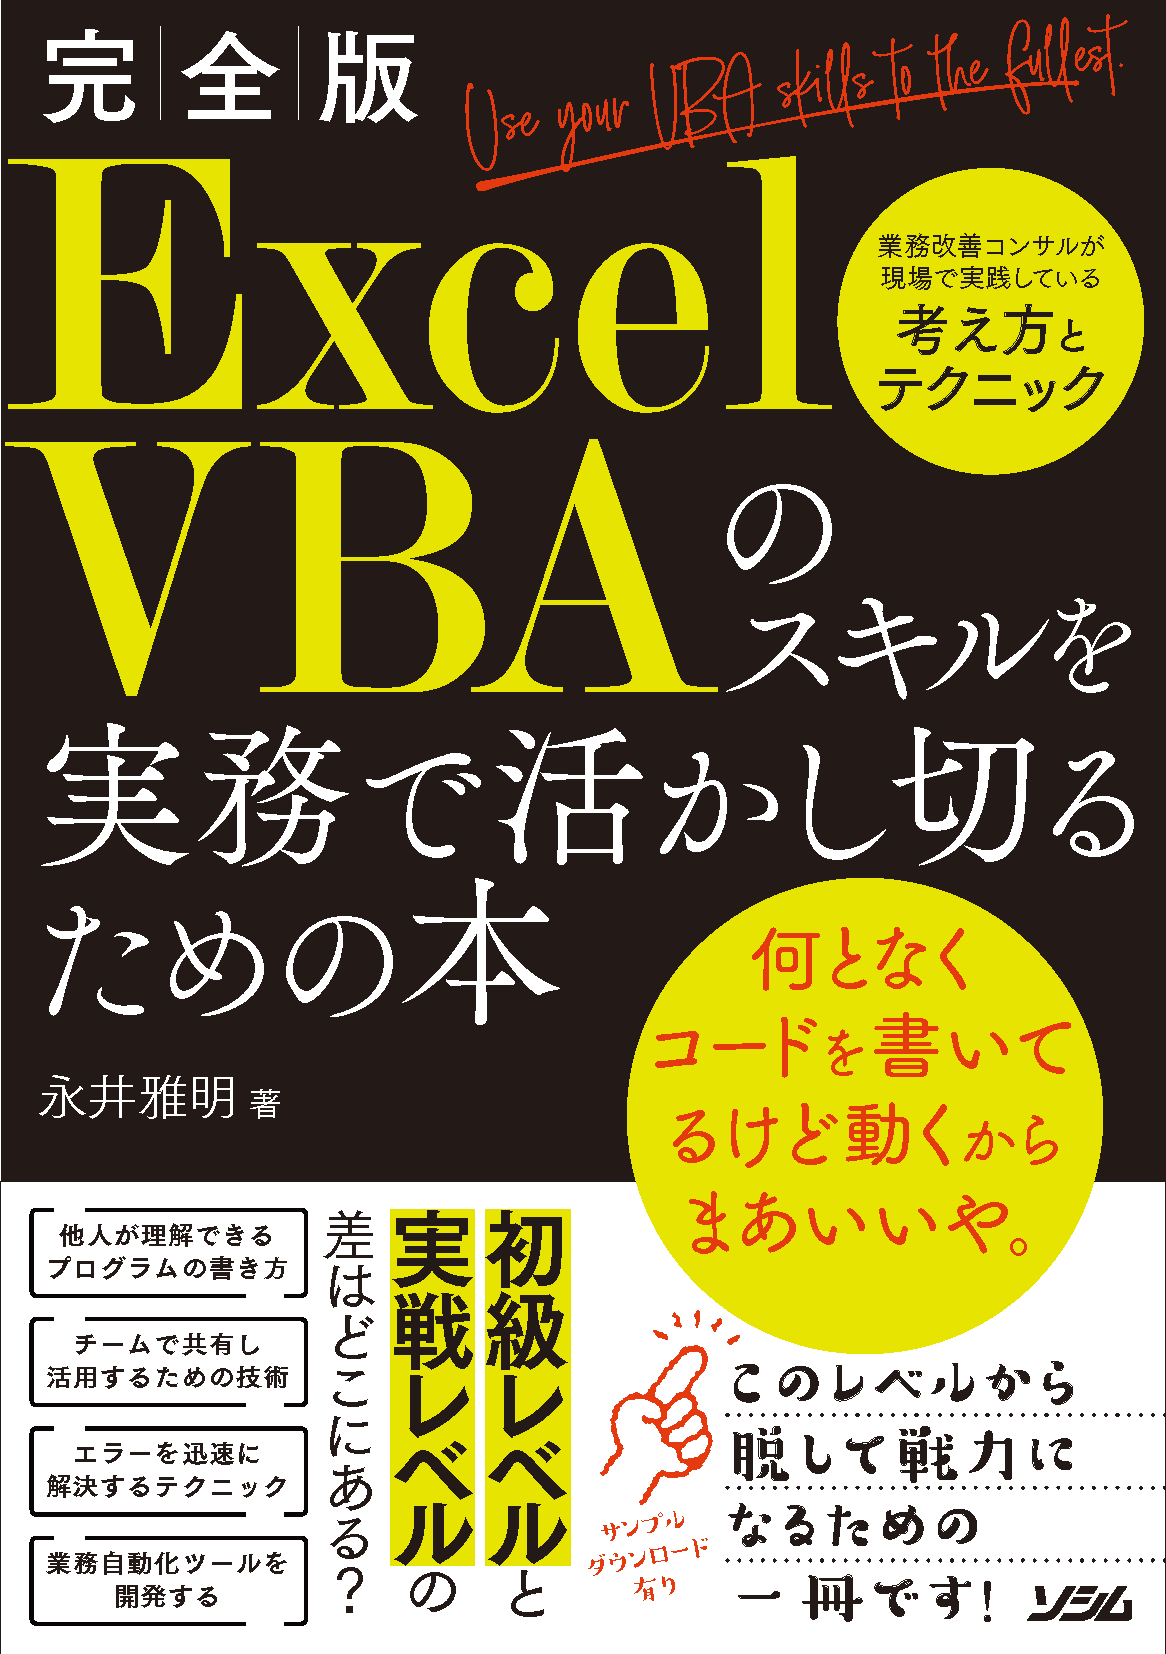 会員書籍「ExcelVBAのスキルを実務で活かし切るための本」